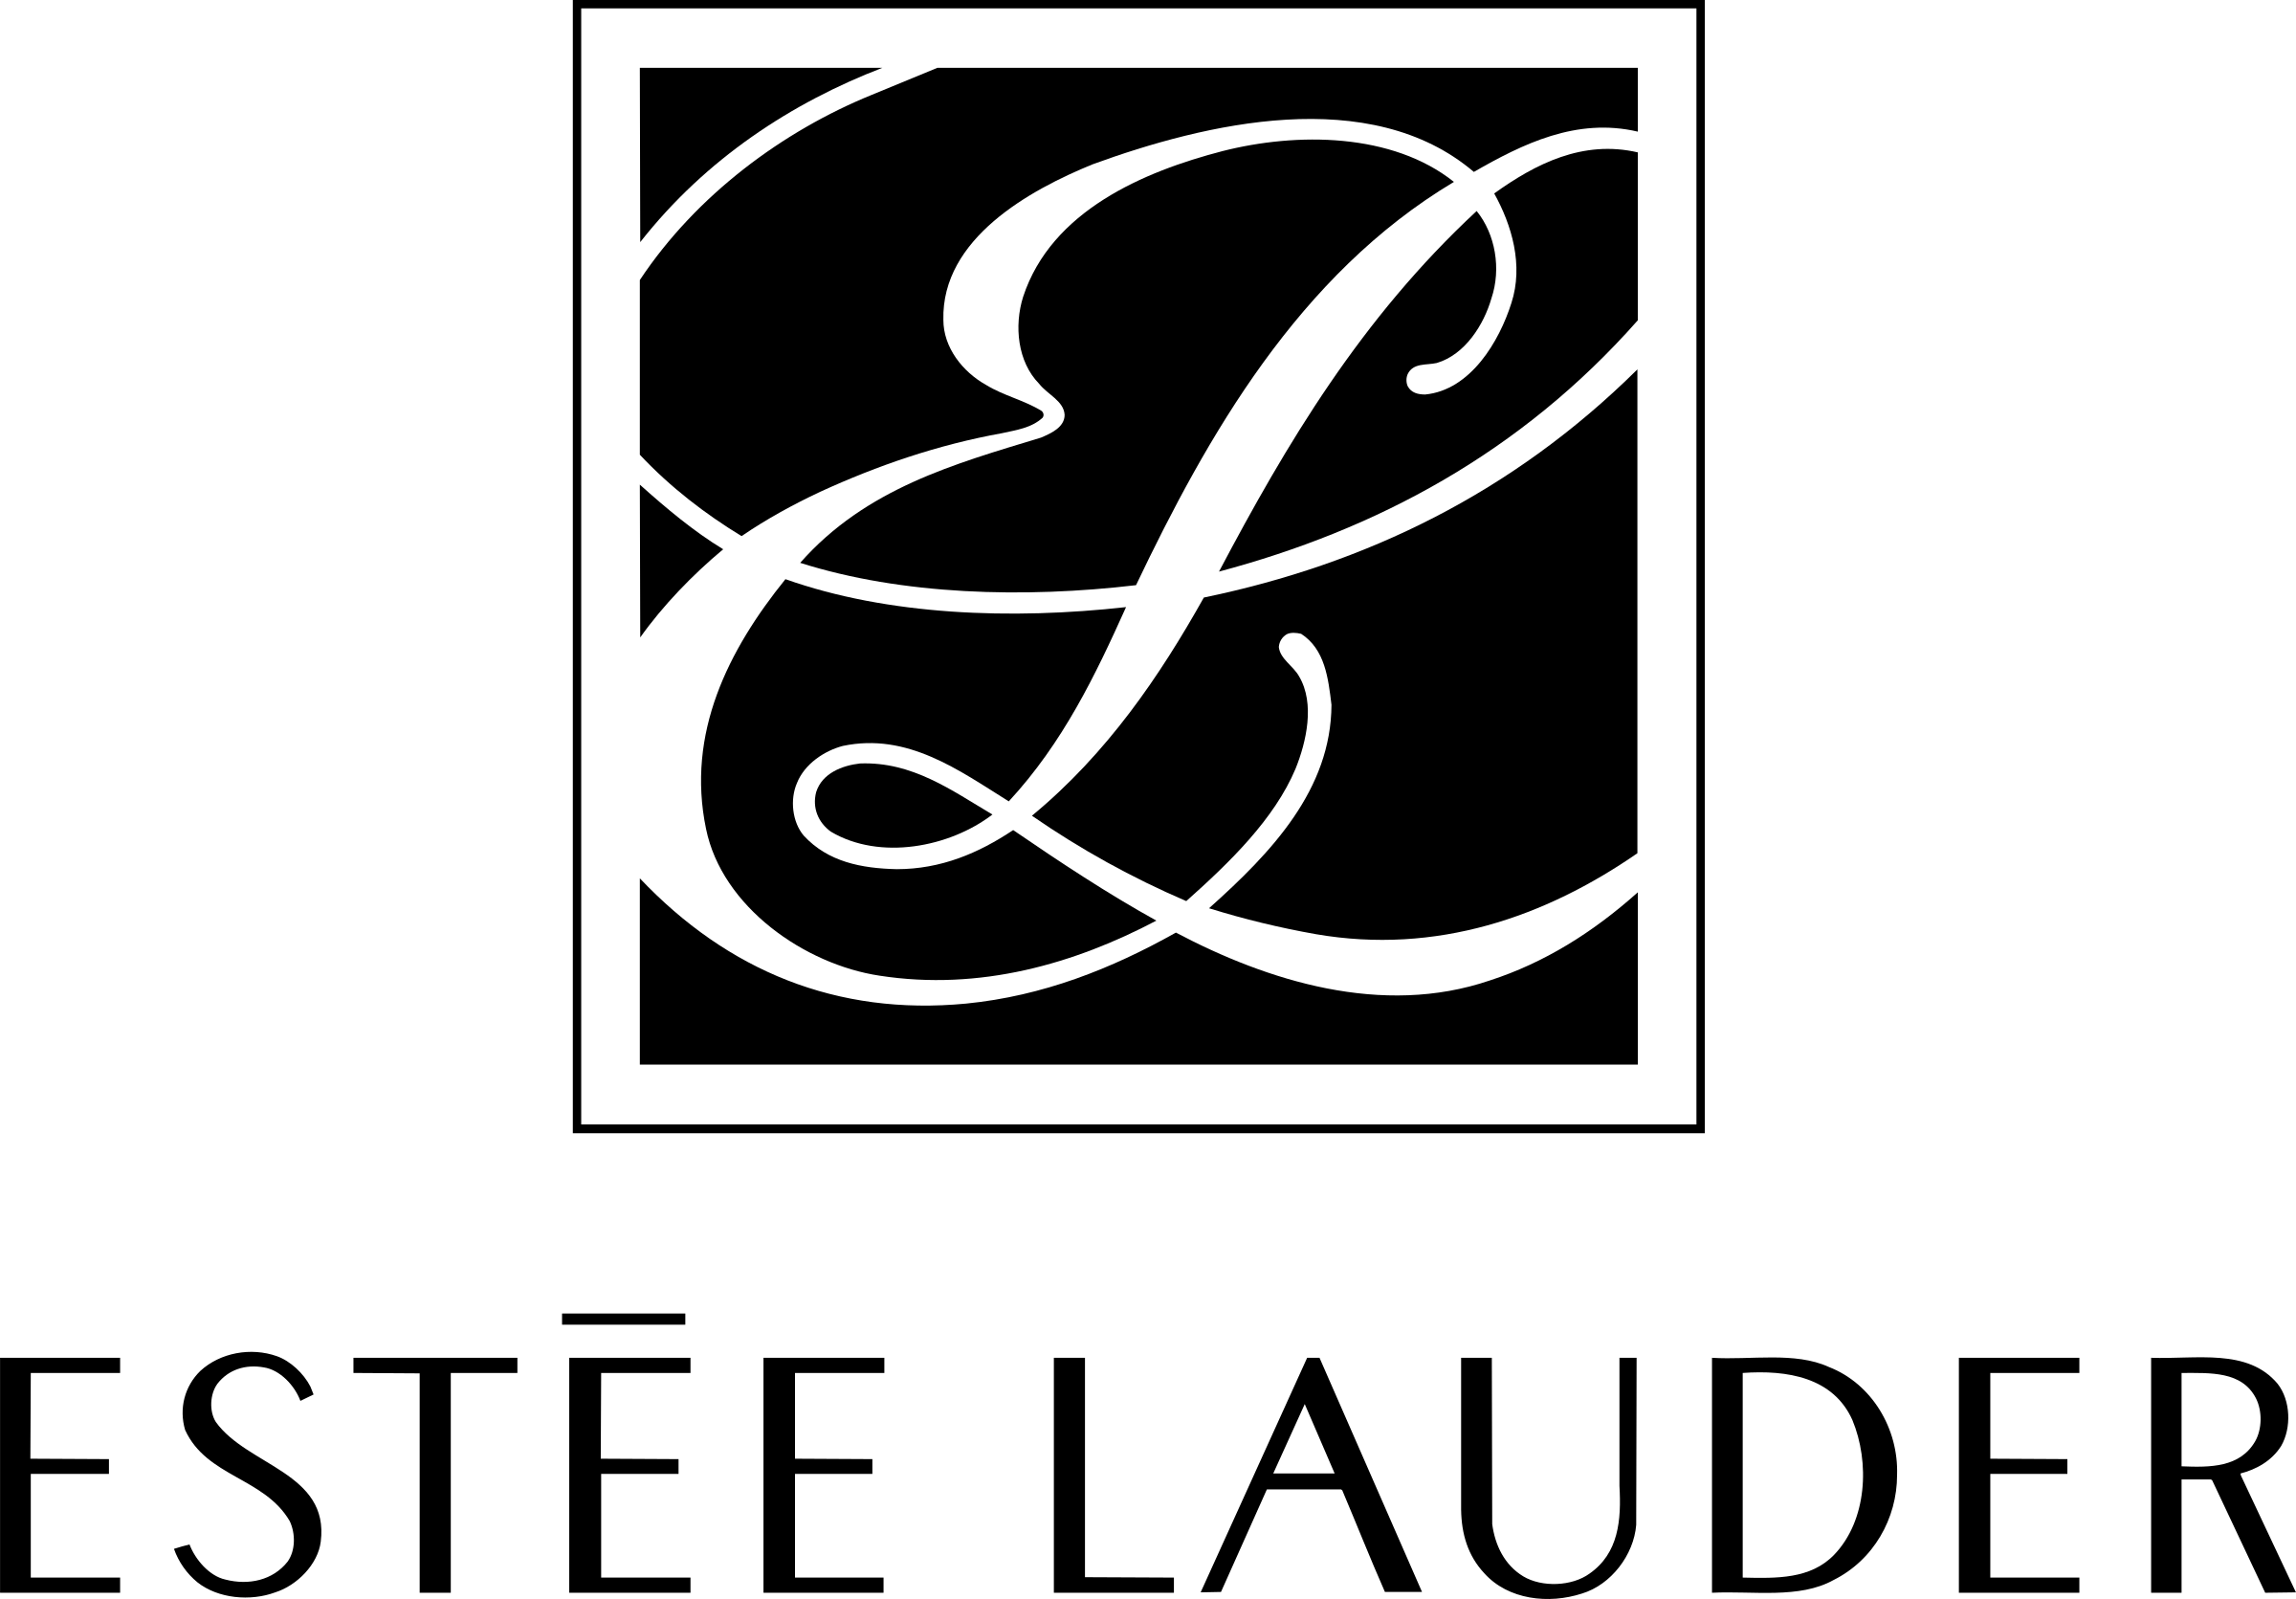 Estée Lauder Logo